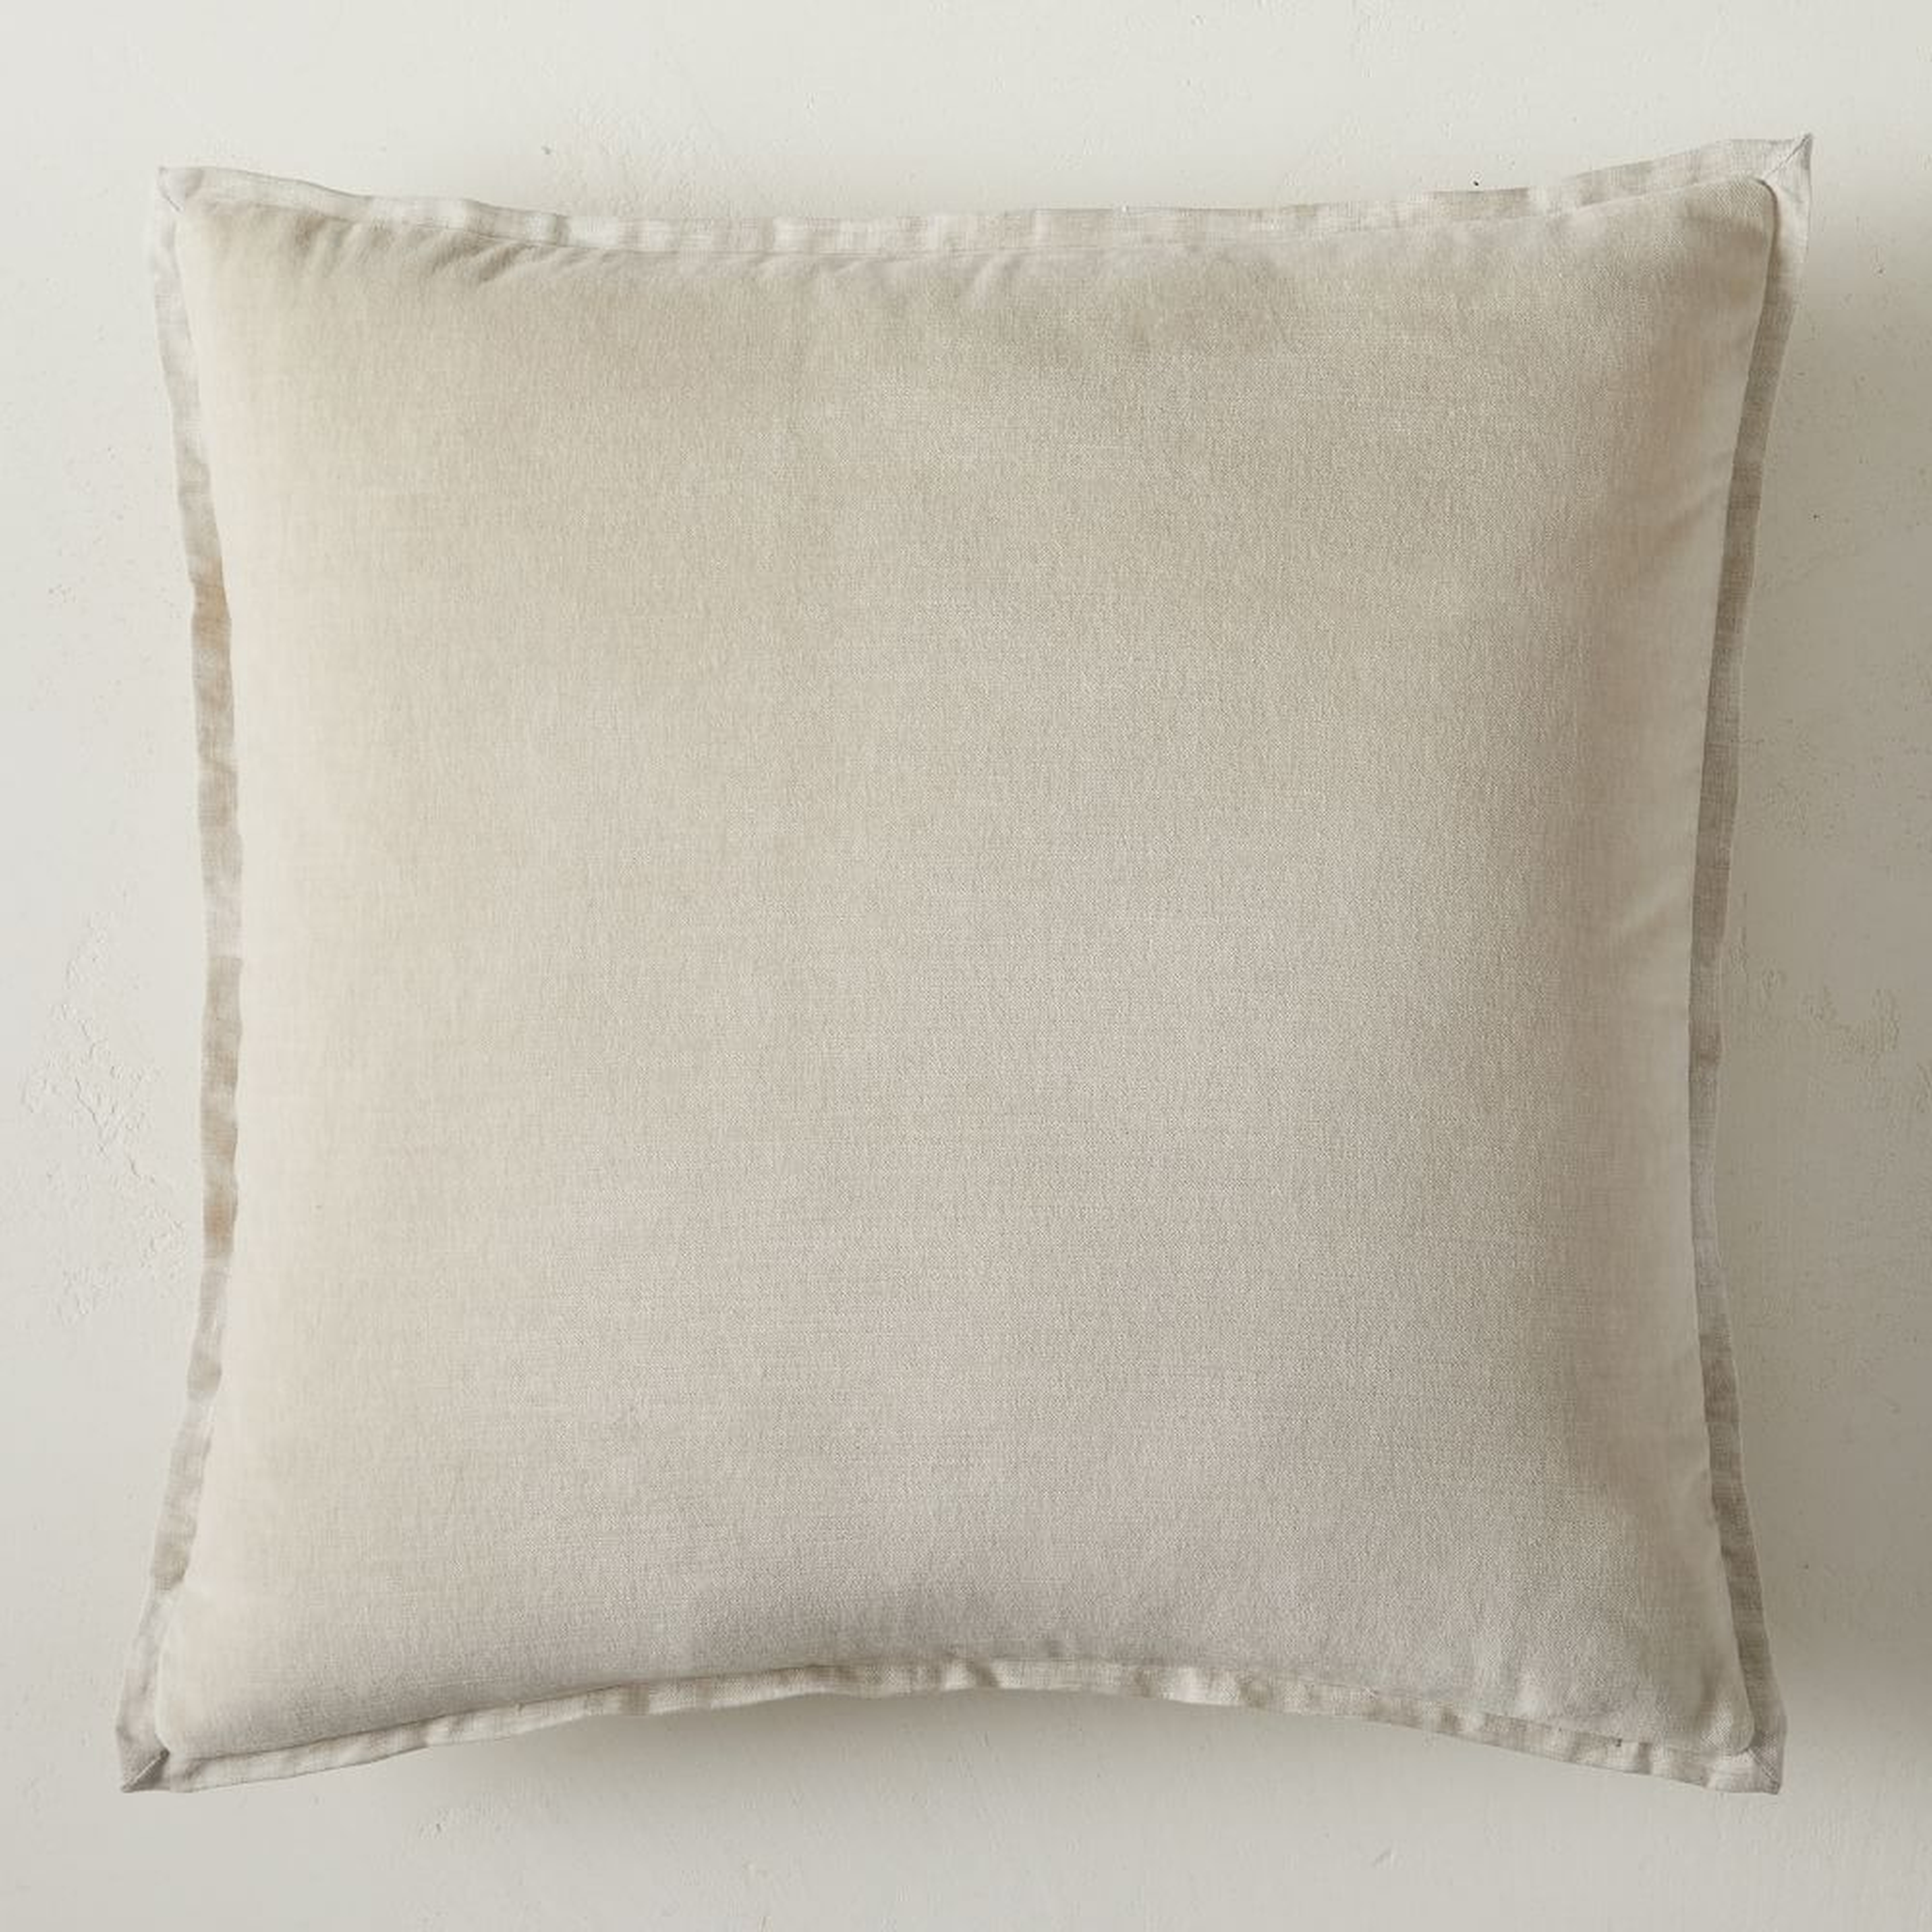 Classic Cotton Velvet Pillow Cover, 20"x20", Natural - West Elm